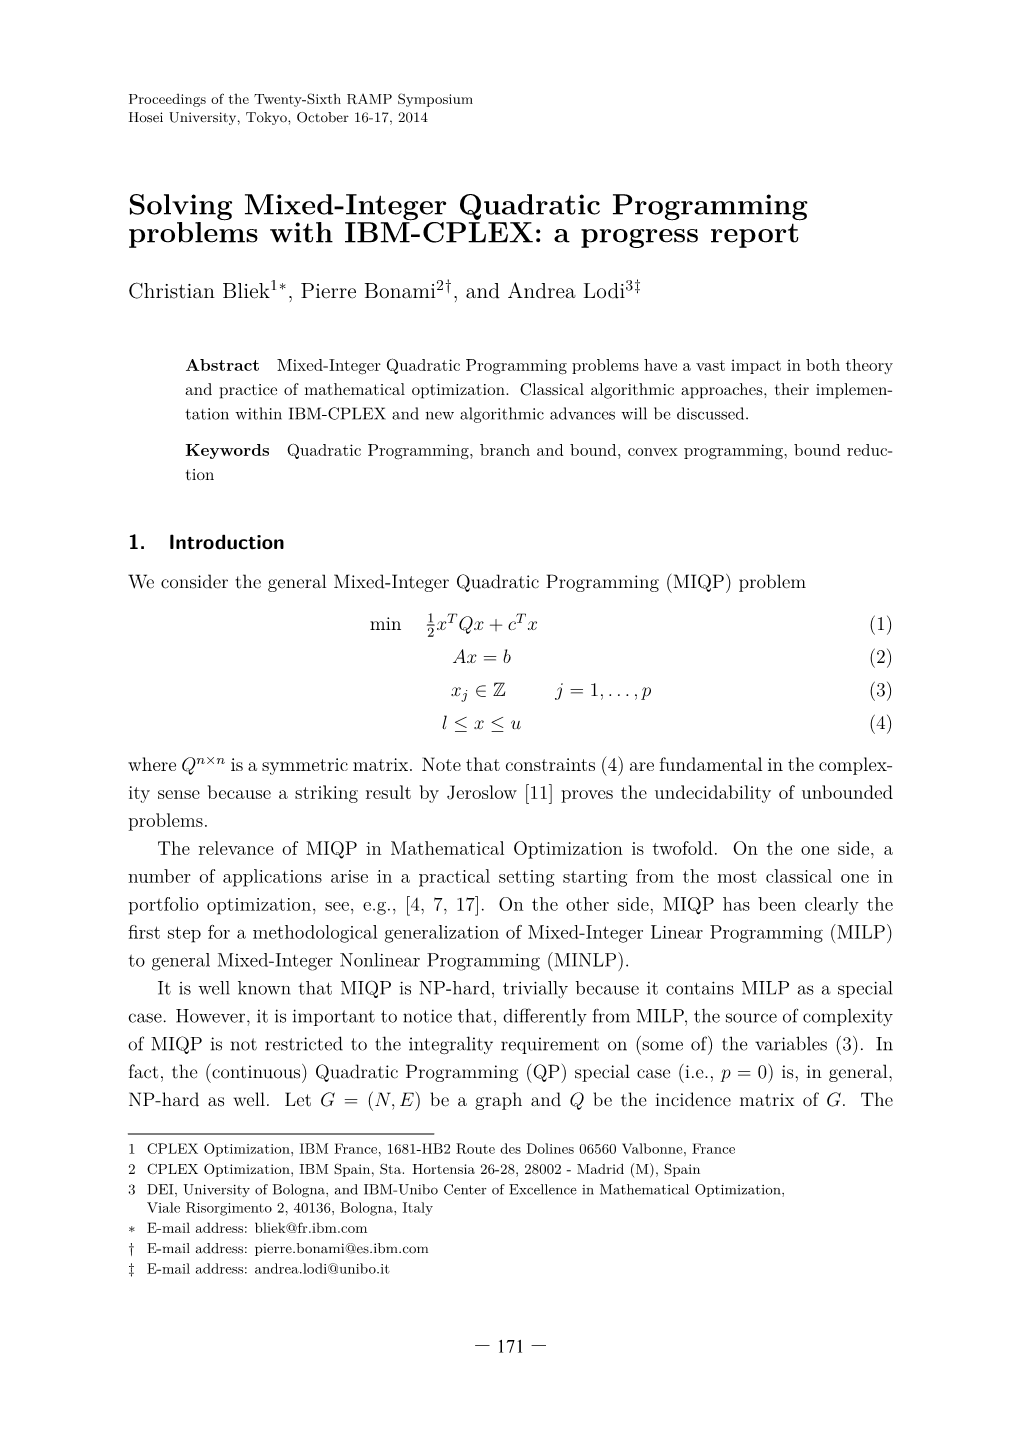 Solving Mixed-Integer Quadratic Programming Problems with IBM-CPLEX: a Progress Report